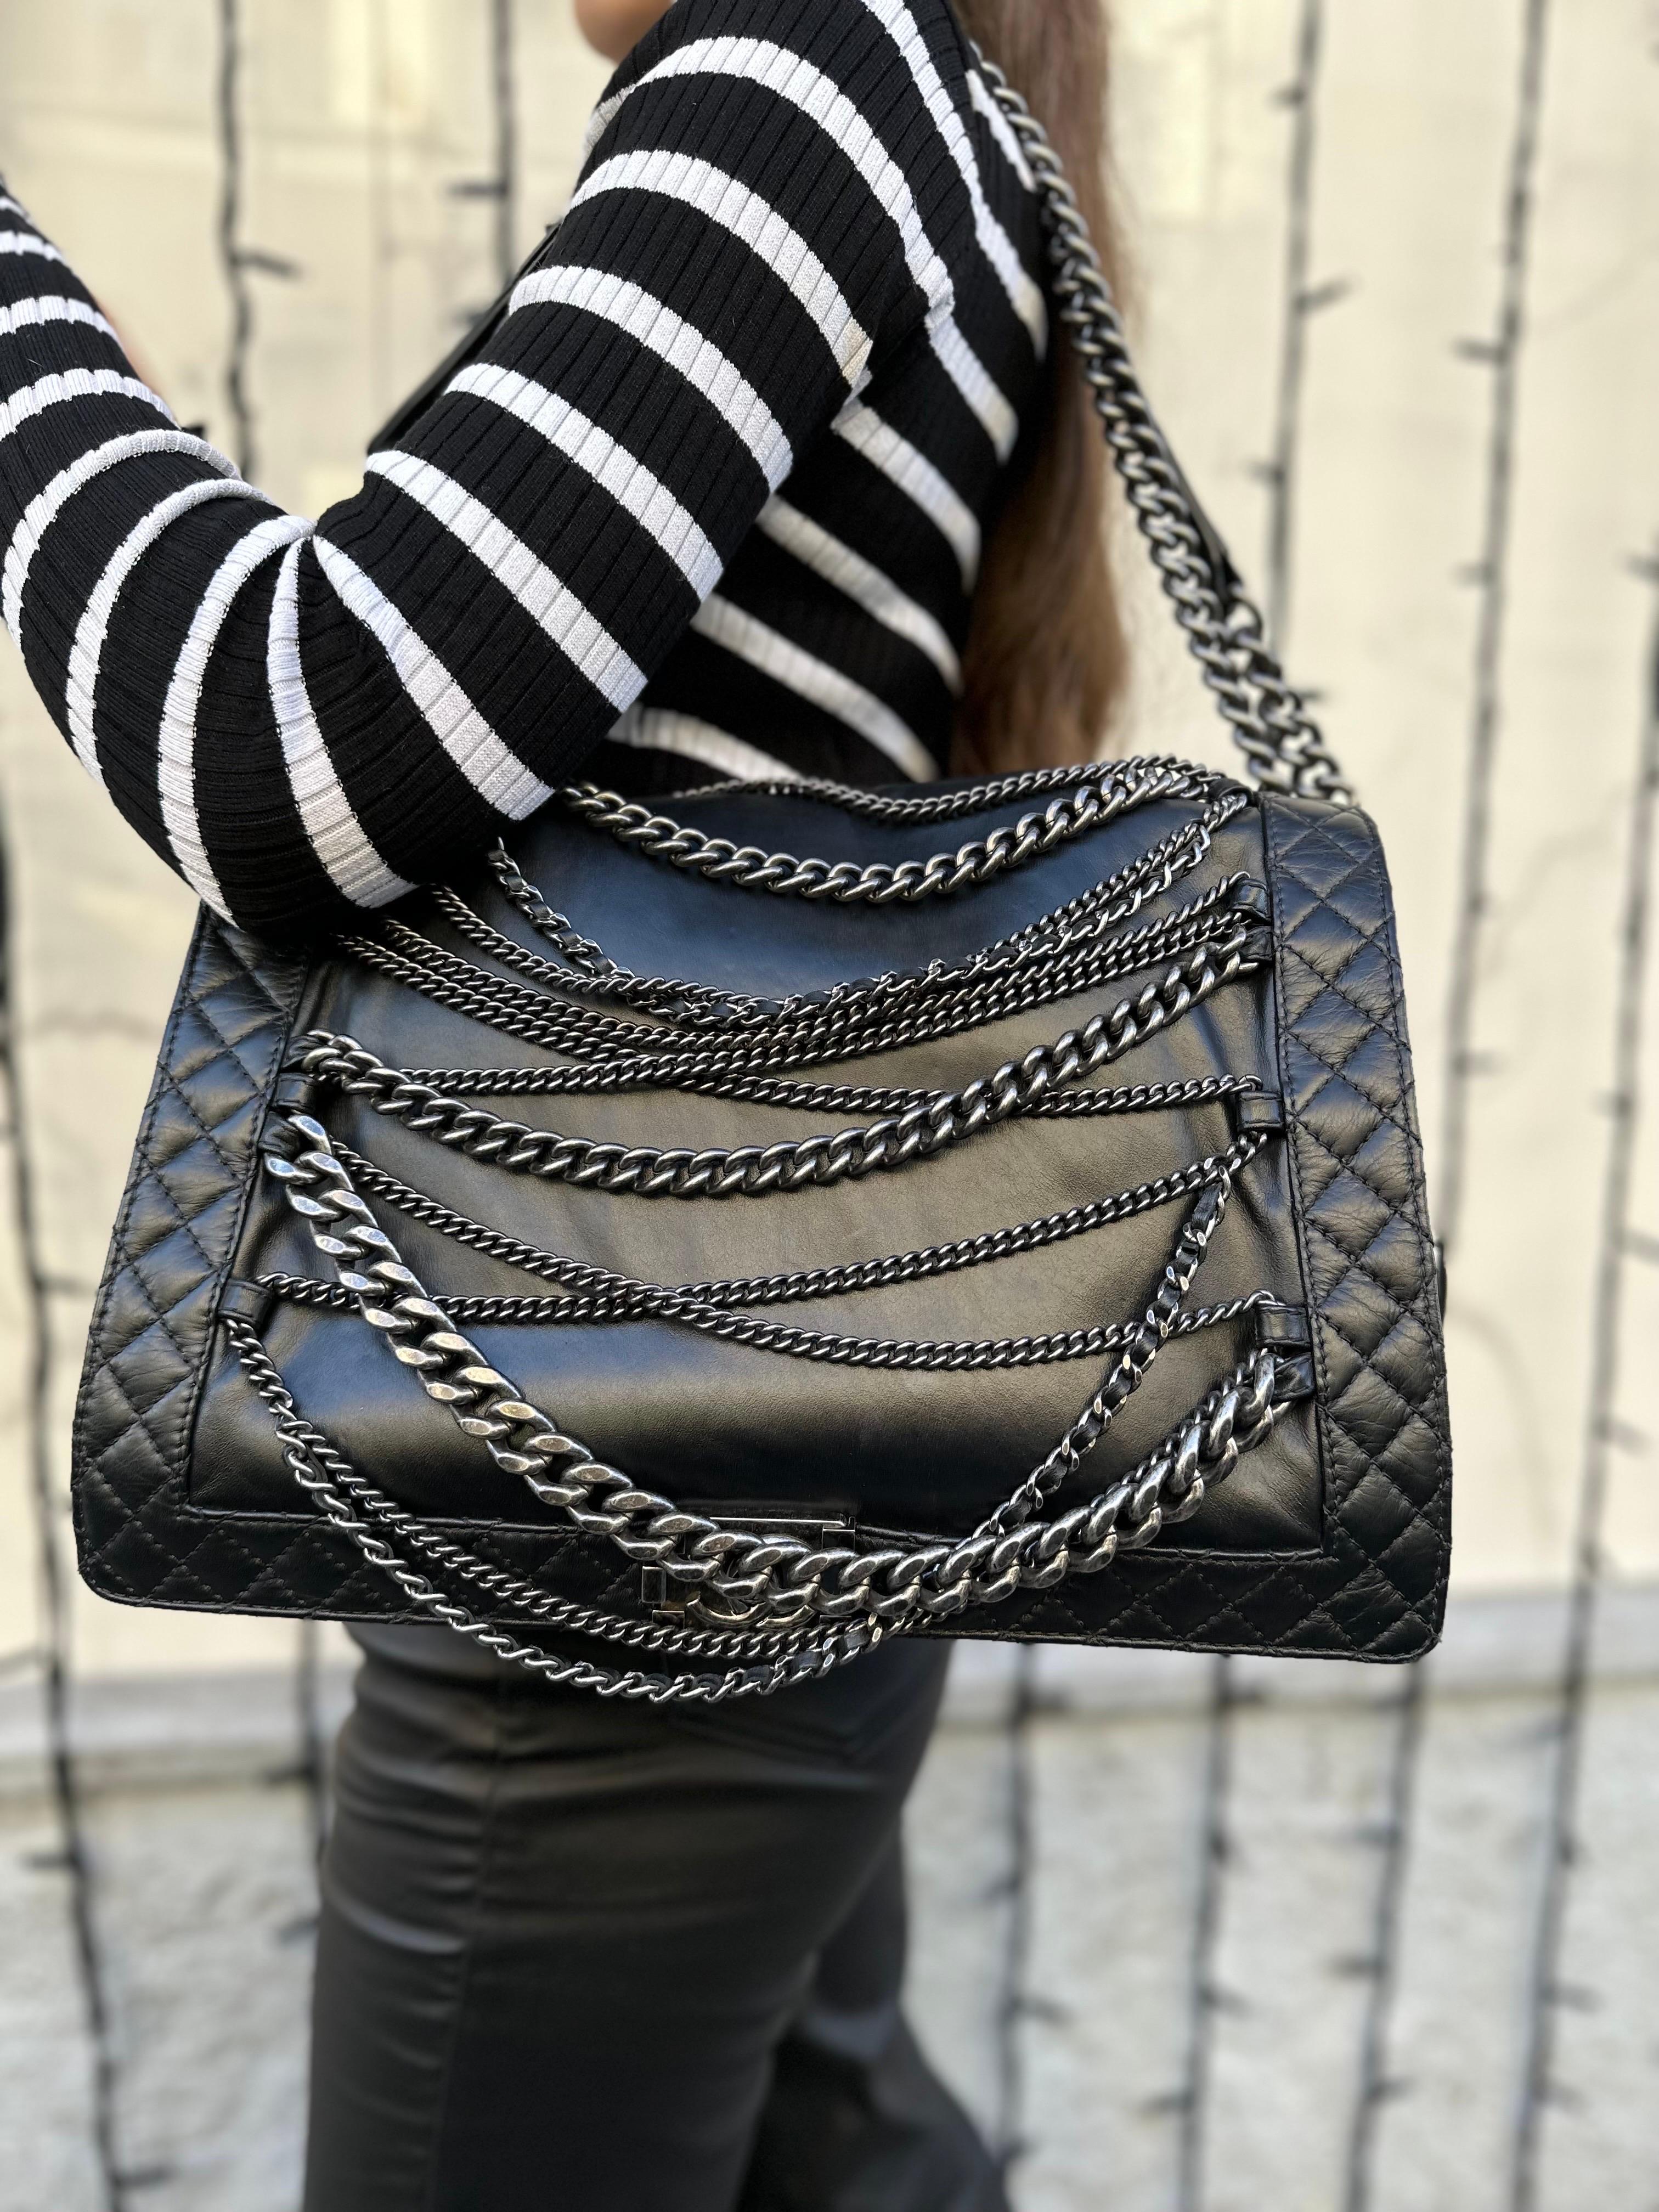 2014 Chanel Boy XL Limited Edition Shoulder Bag Multi Chains 12